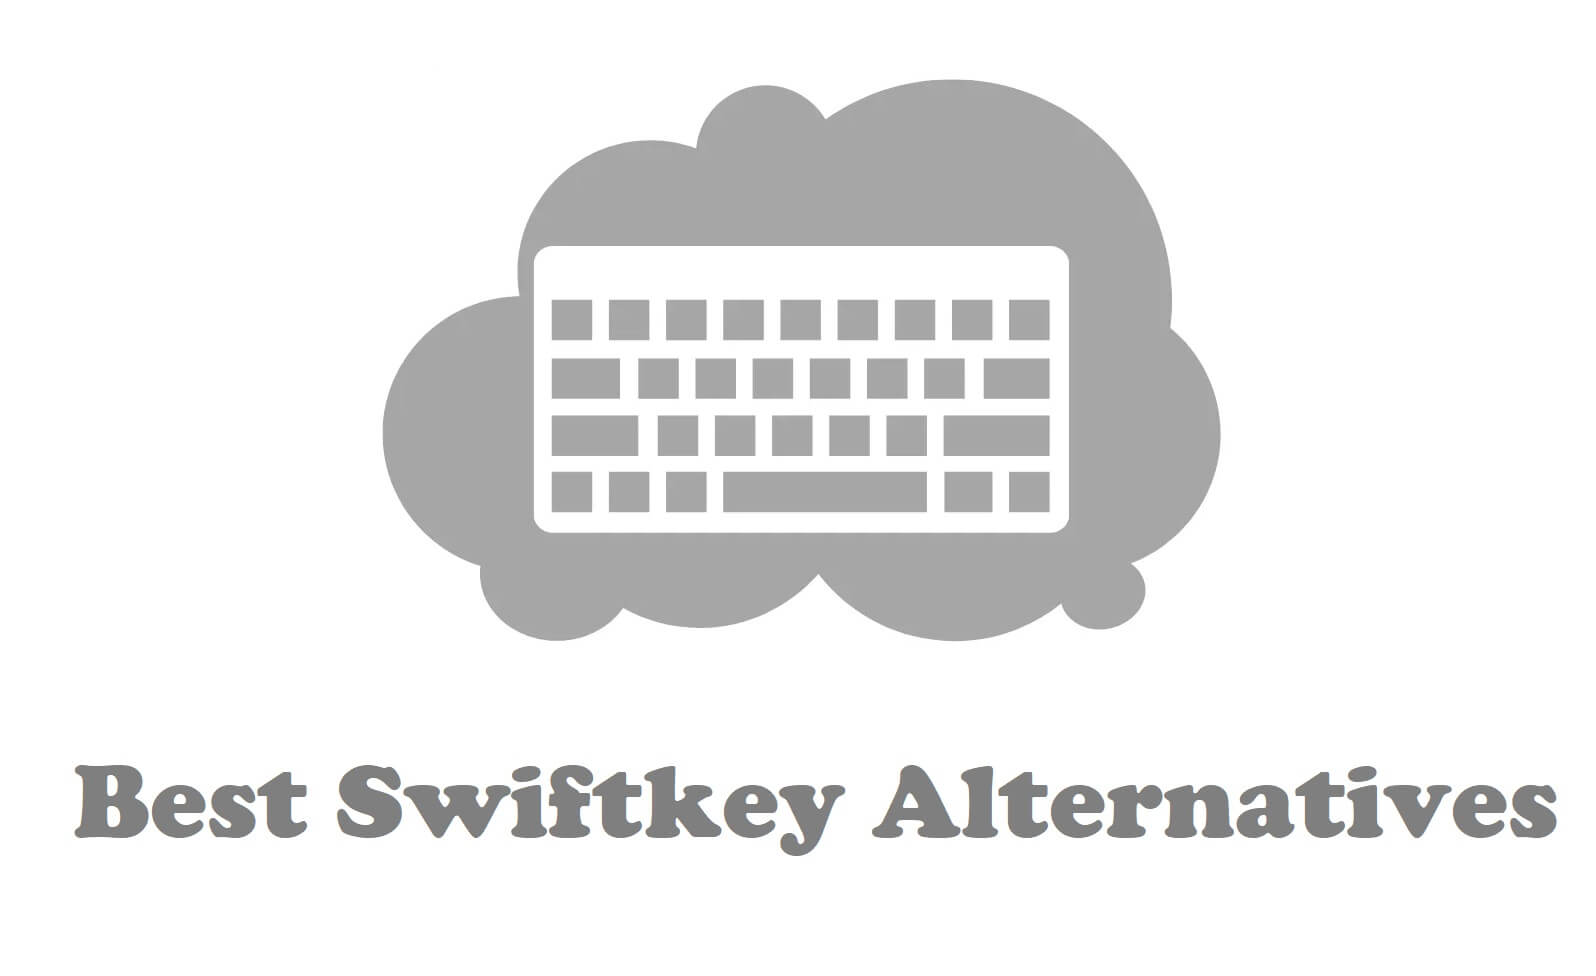 Best Swiftkey Alternatives